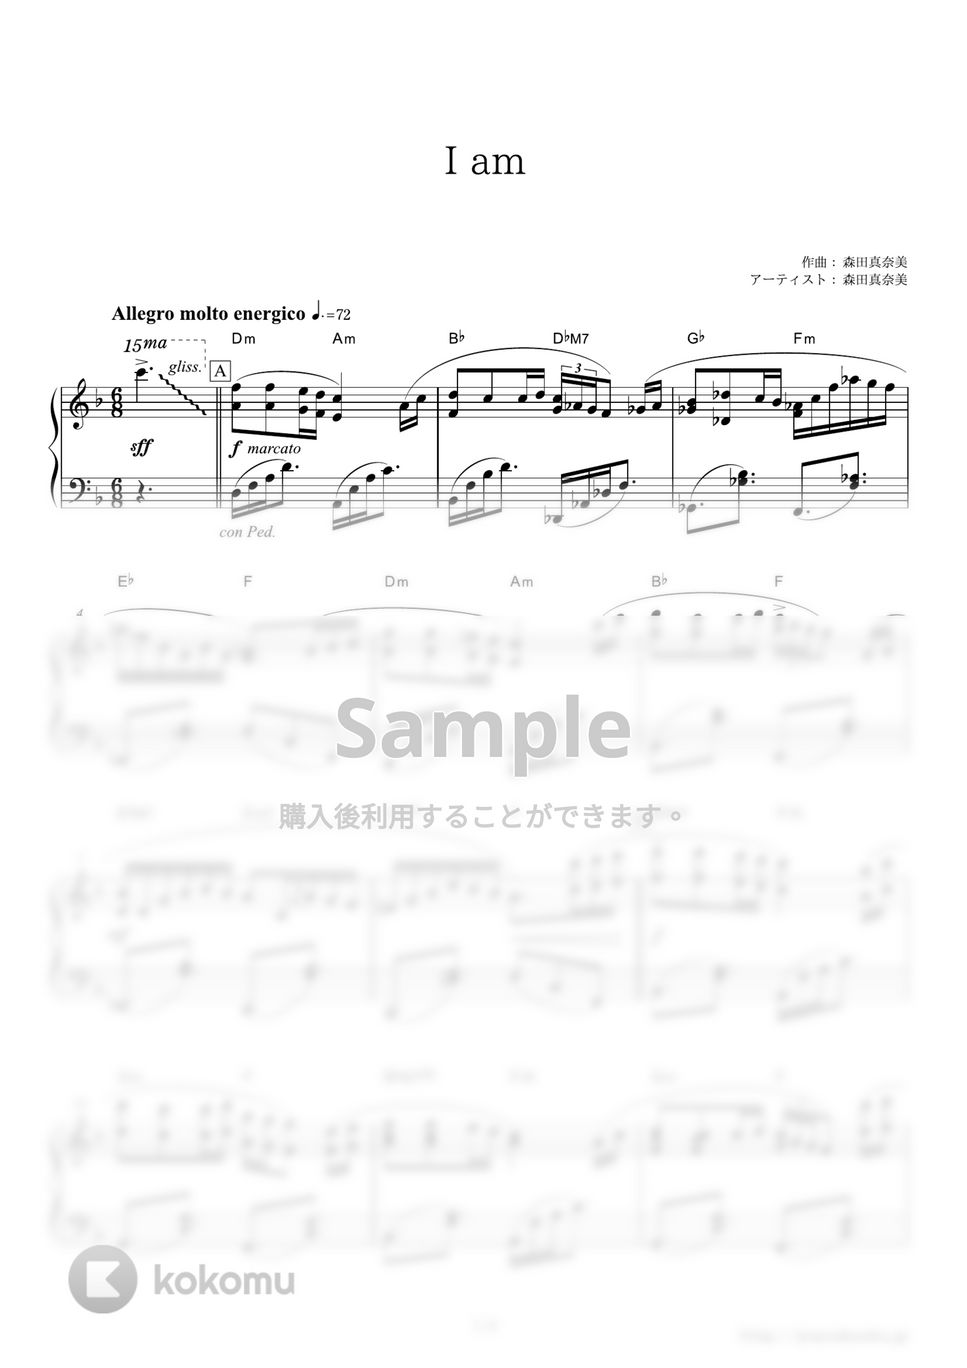 森田真奈美 - I am (テレビ朝日「報道ステーション」オープニングテーマ) by ピアノの本棚